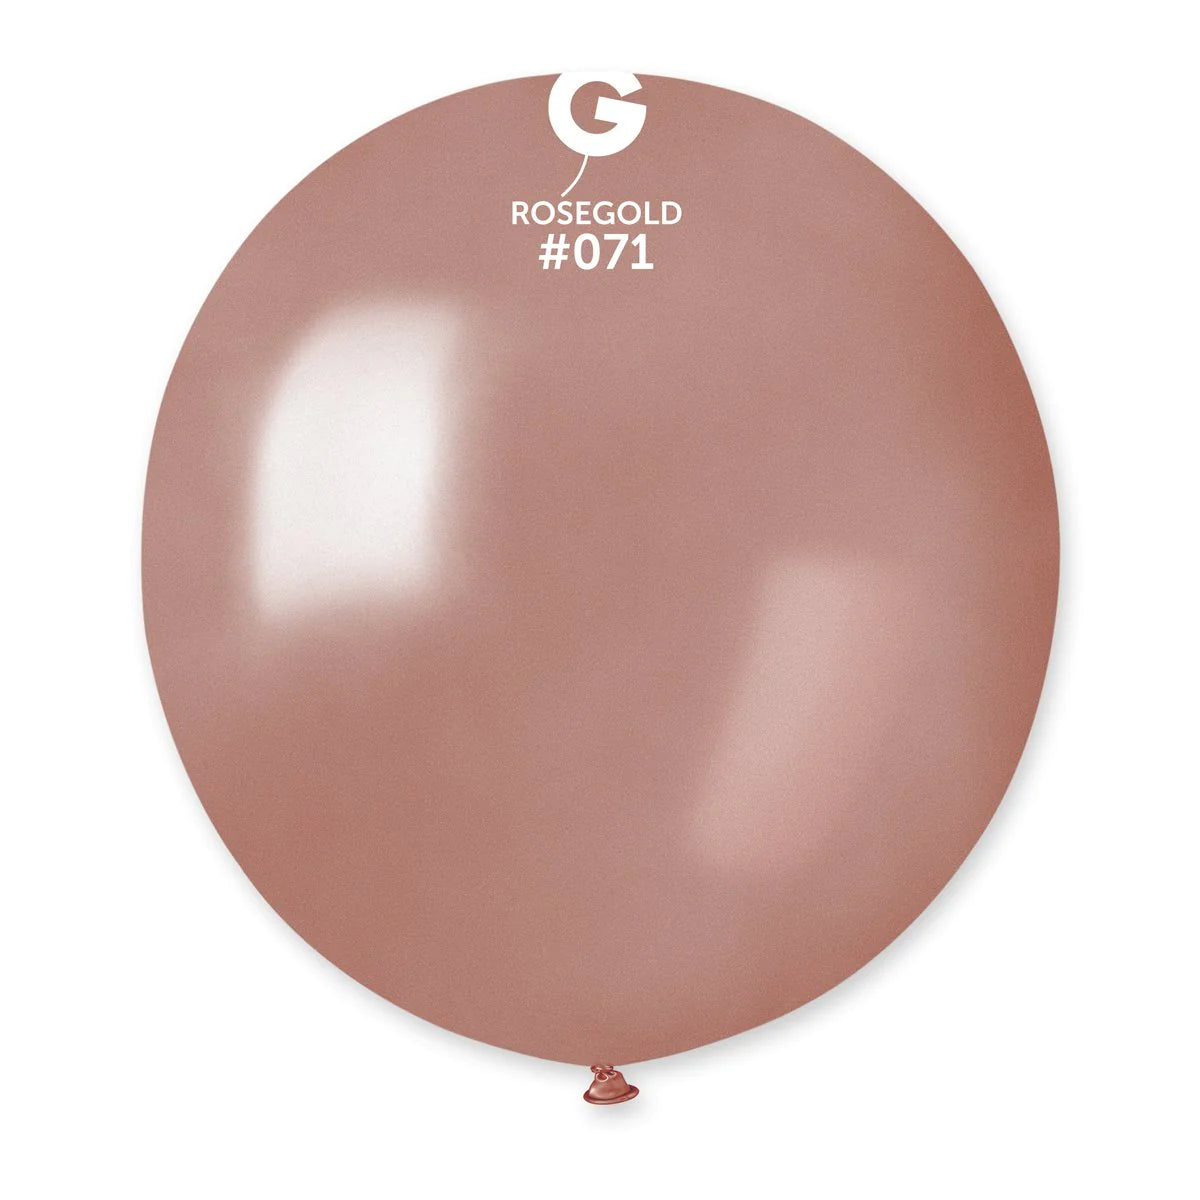 Metallic Balloon Rose Gold #071 SIZE 5" 12" 19" 31"